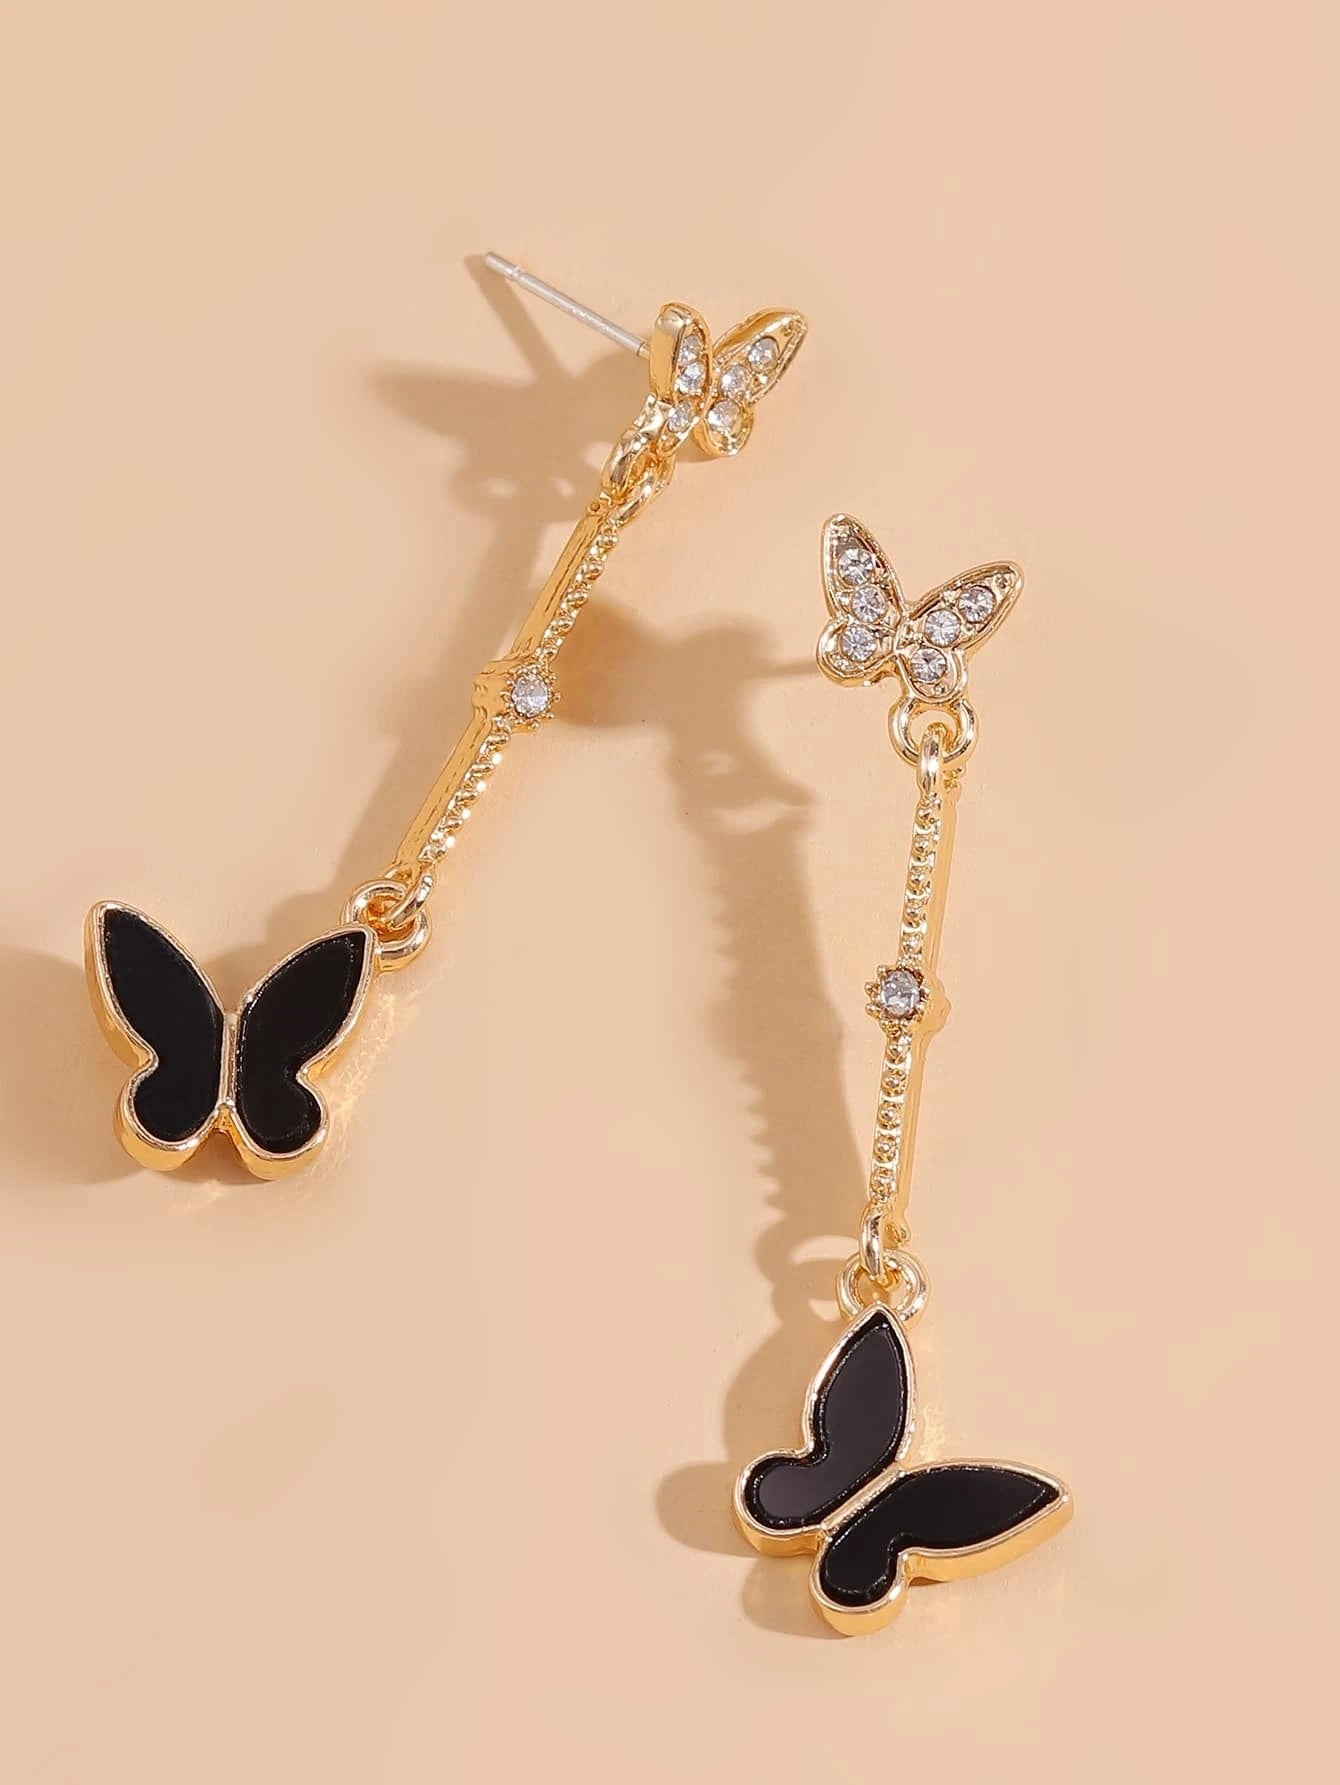 Butterfly Stylish Earrings - HDJ 190